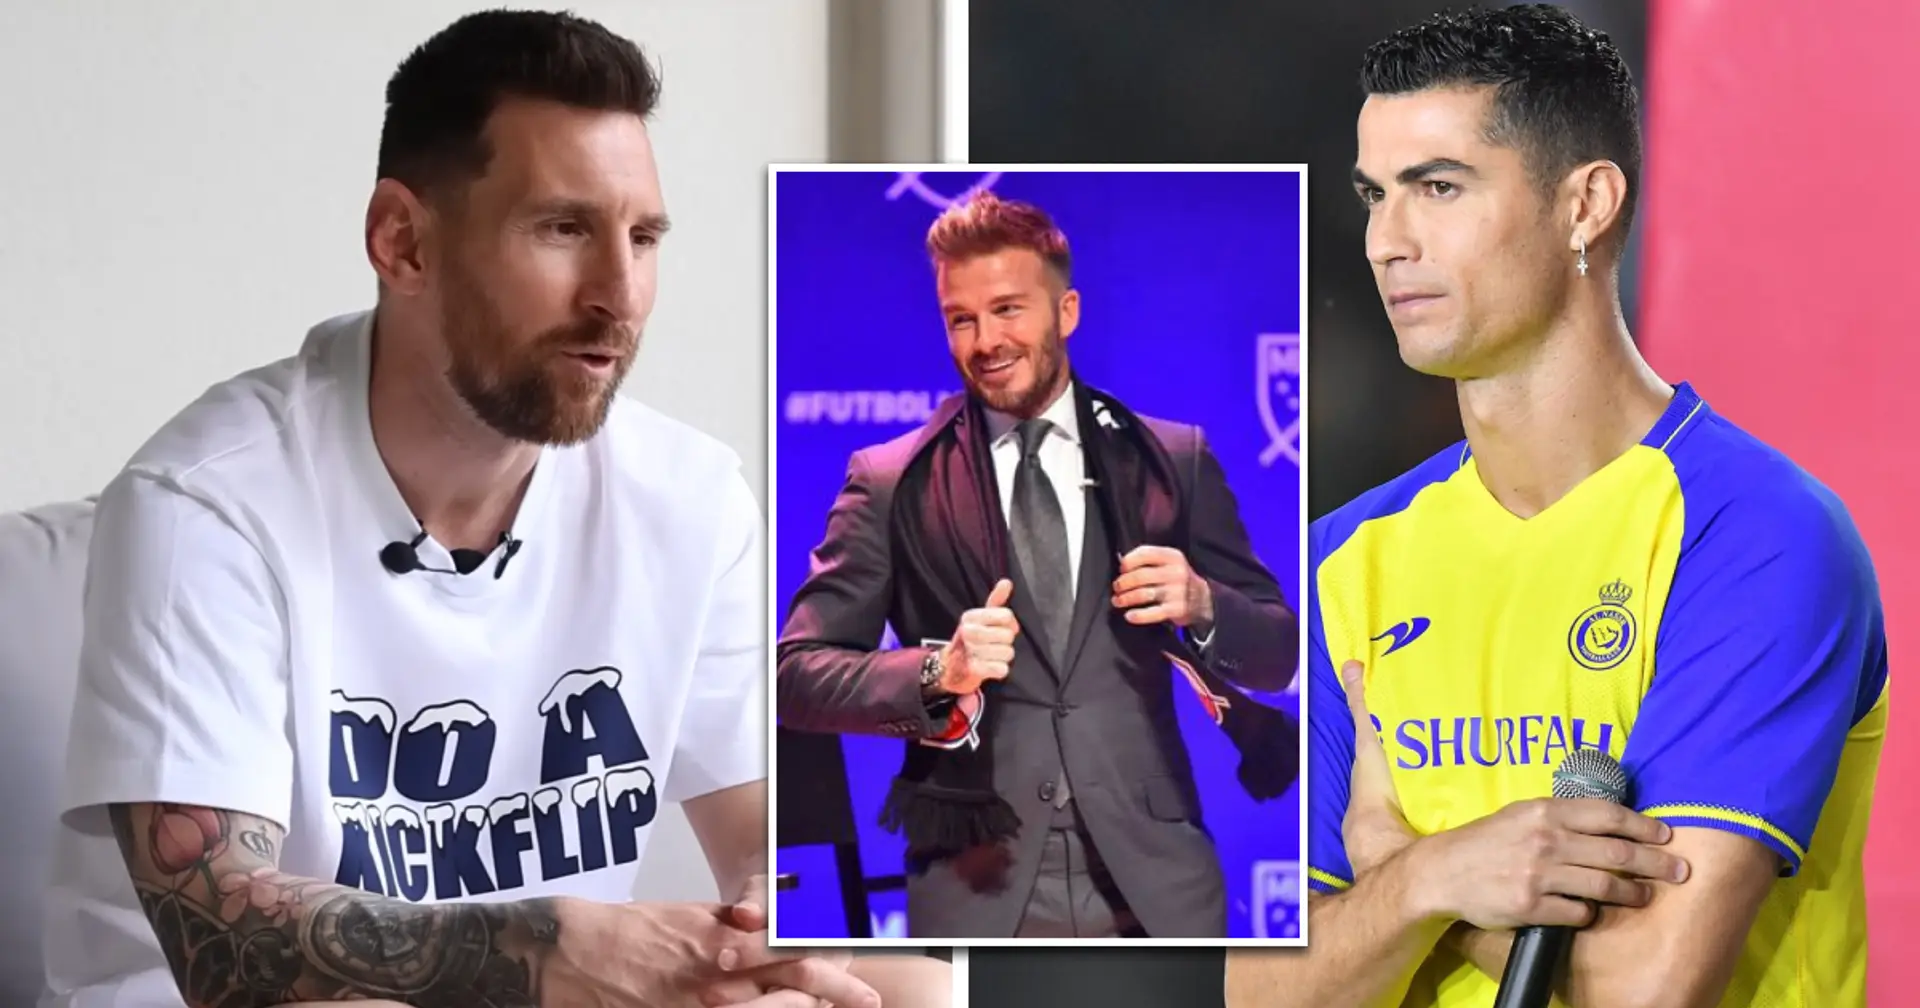 'La economía nunca fue un problema para mí': Messi apunta sutilmente a Cristiano Ronaldo explicando el desaire de transferencia saudita